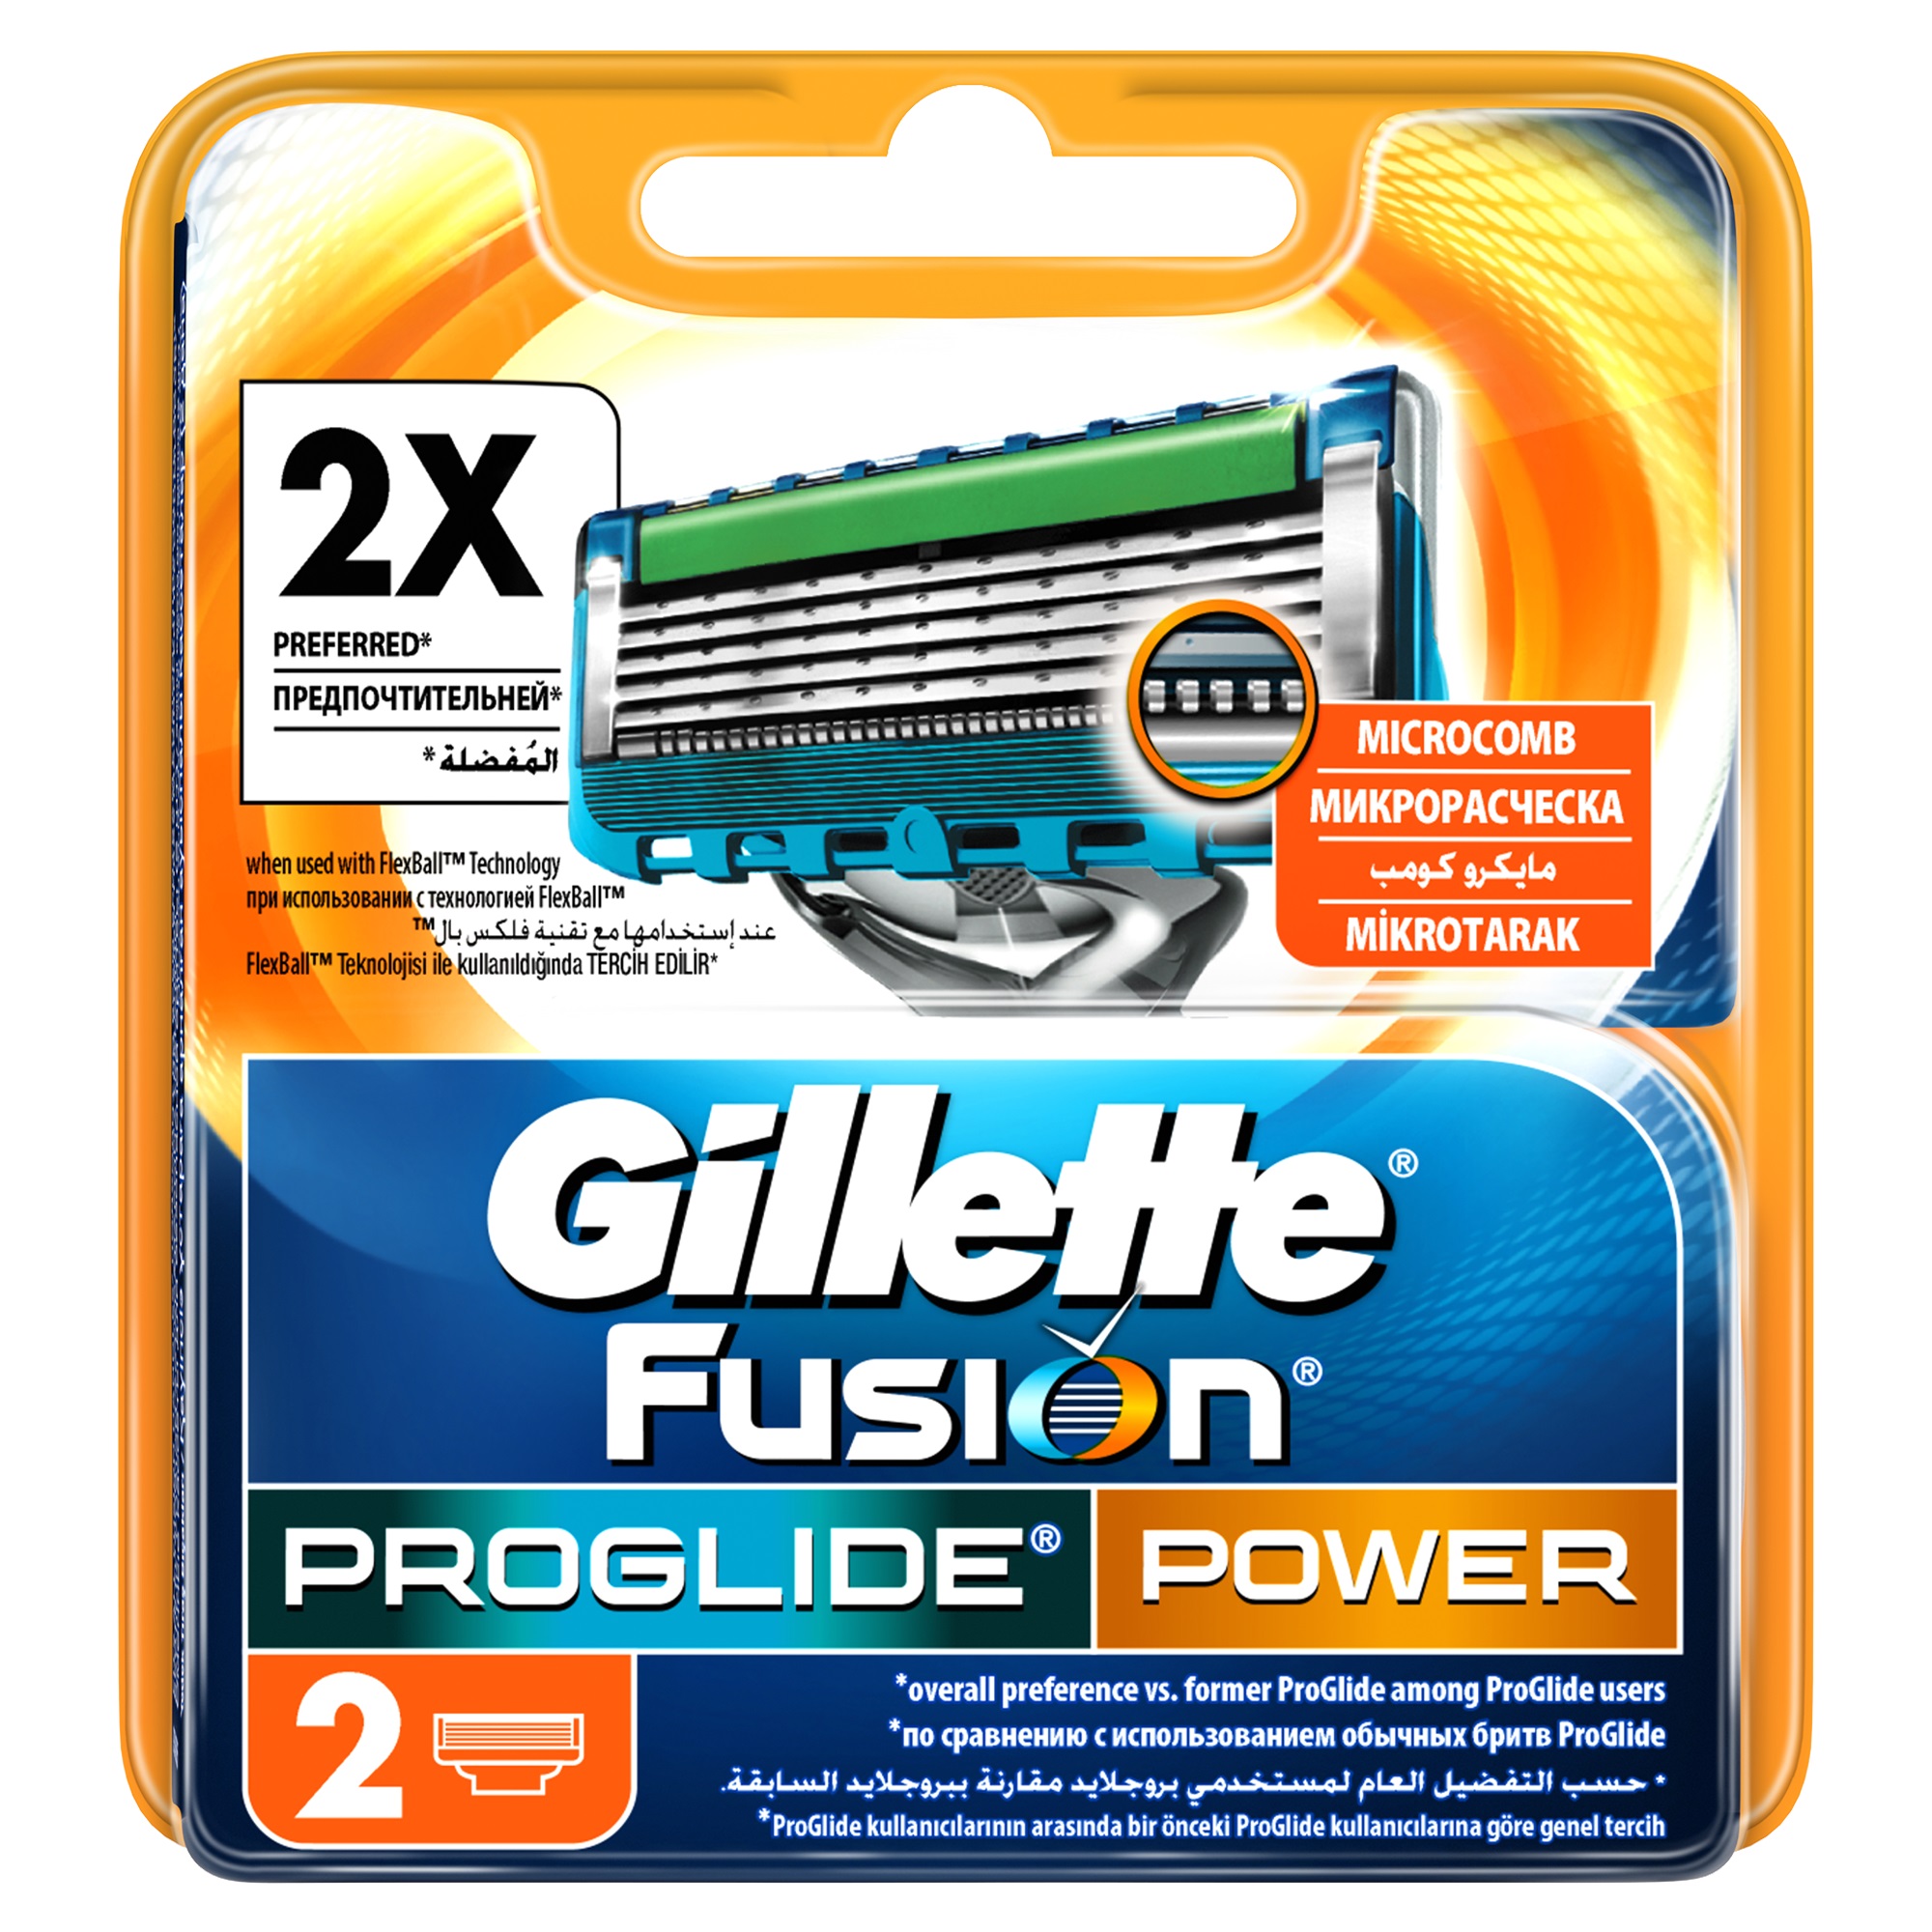 Фьюжен пауэр. Fusion PROGLIDE Power сменные кассеты для бритья 2шт.